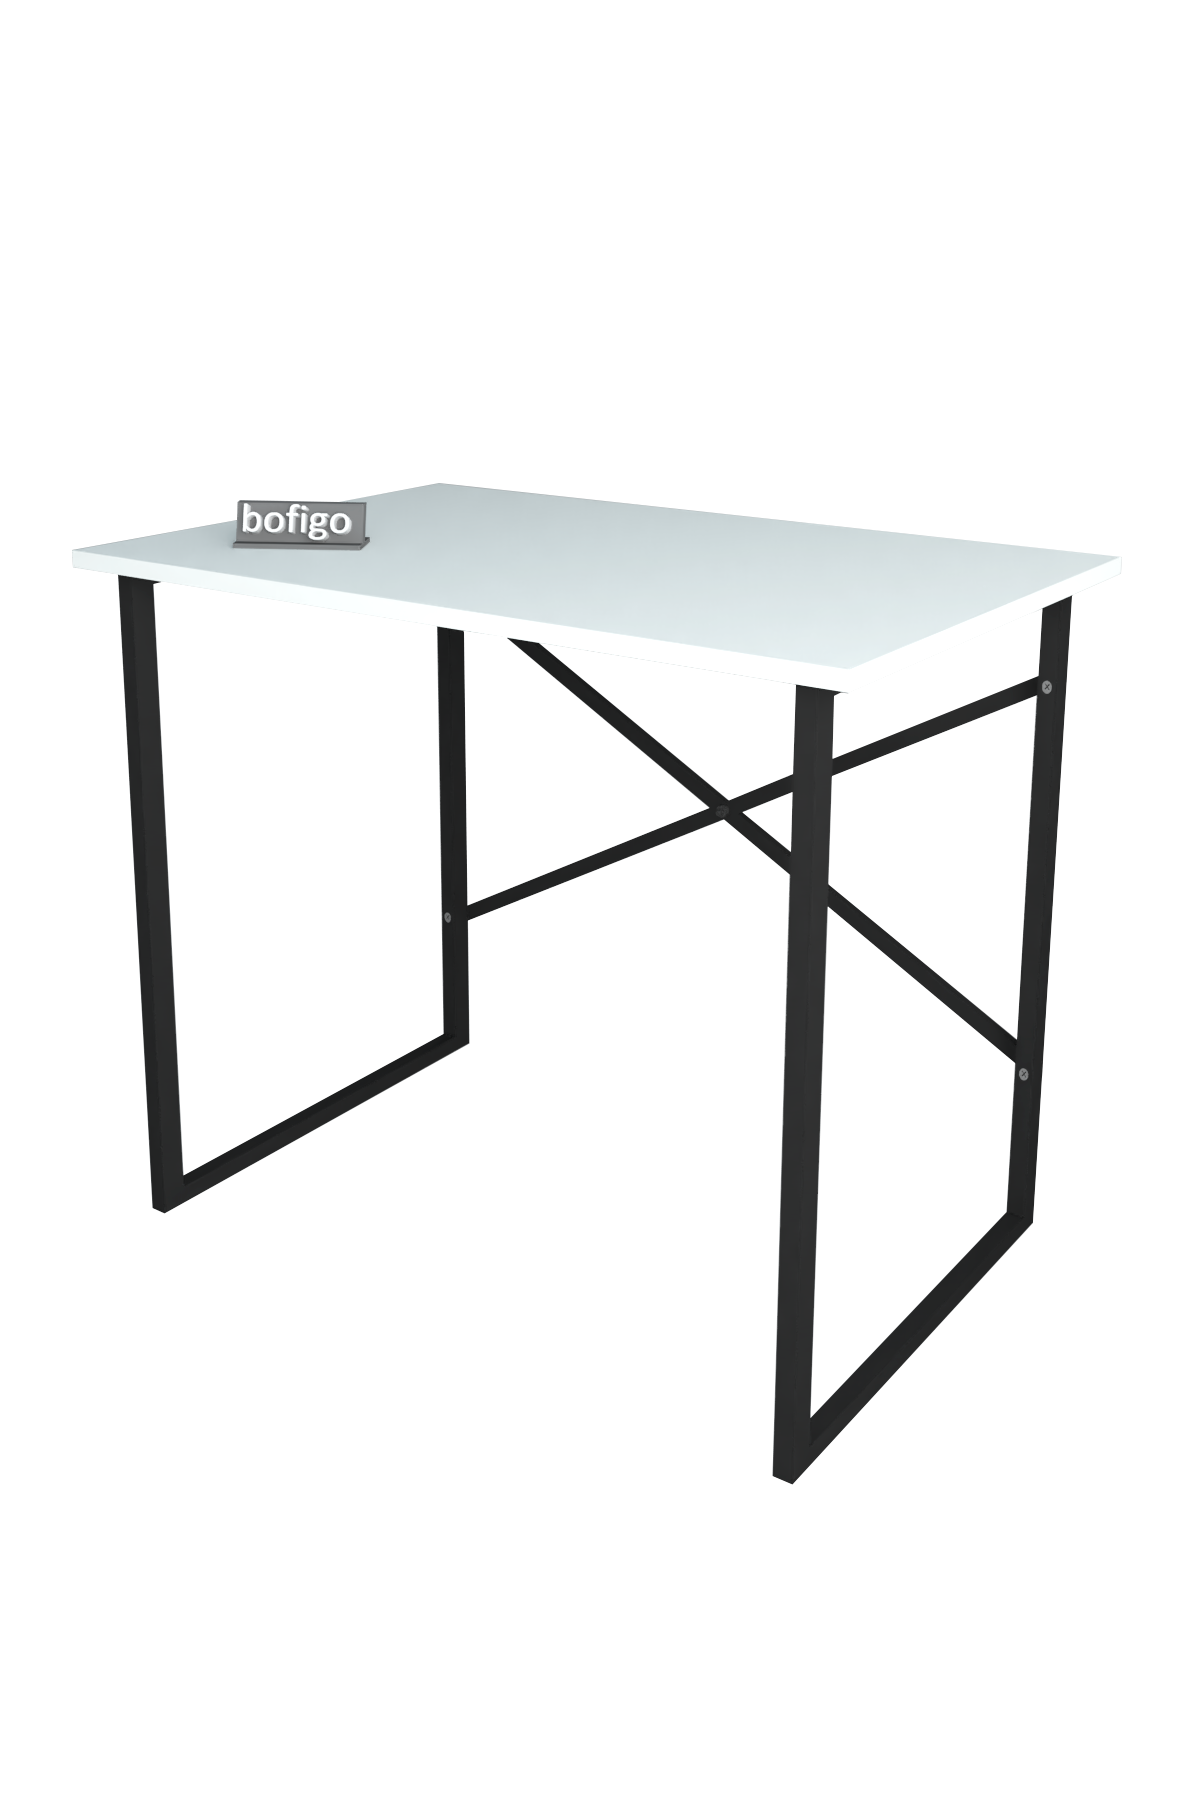 Bofigo Study Desk 60x90 cm White